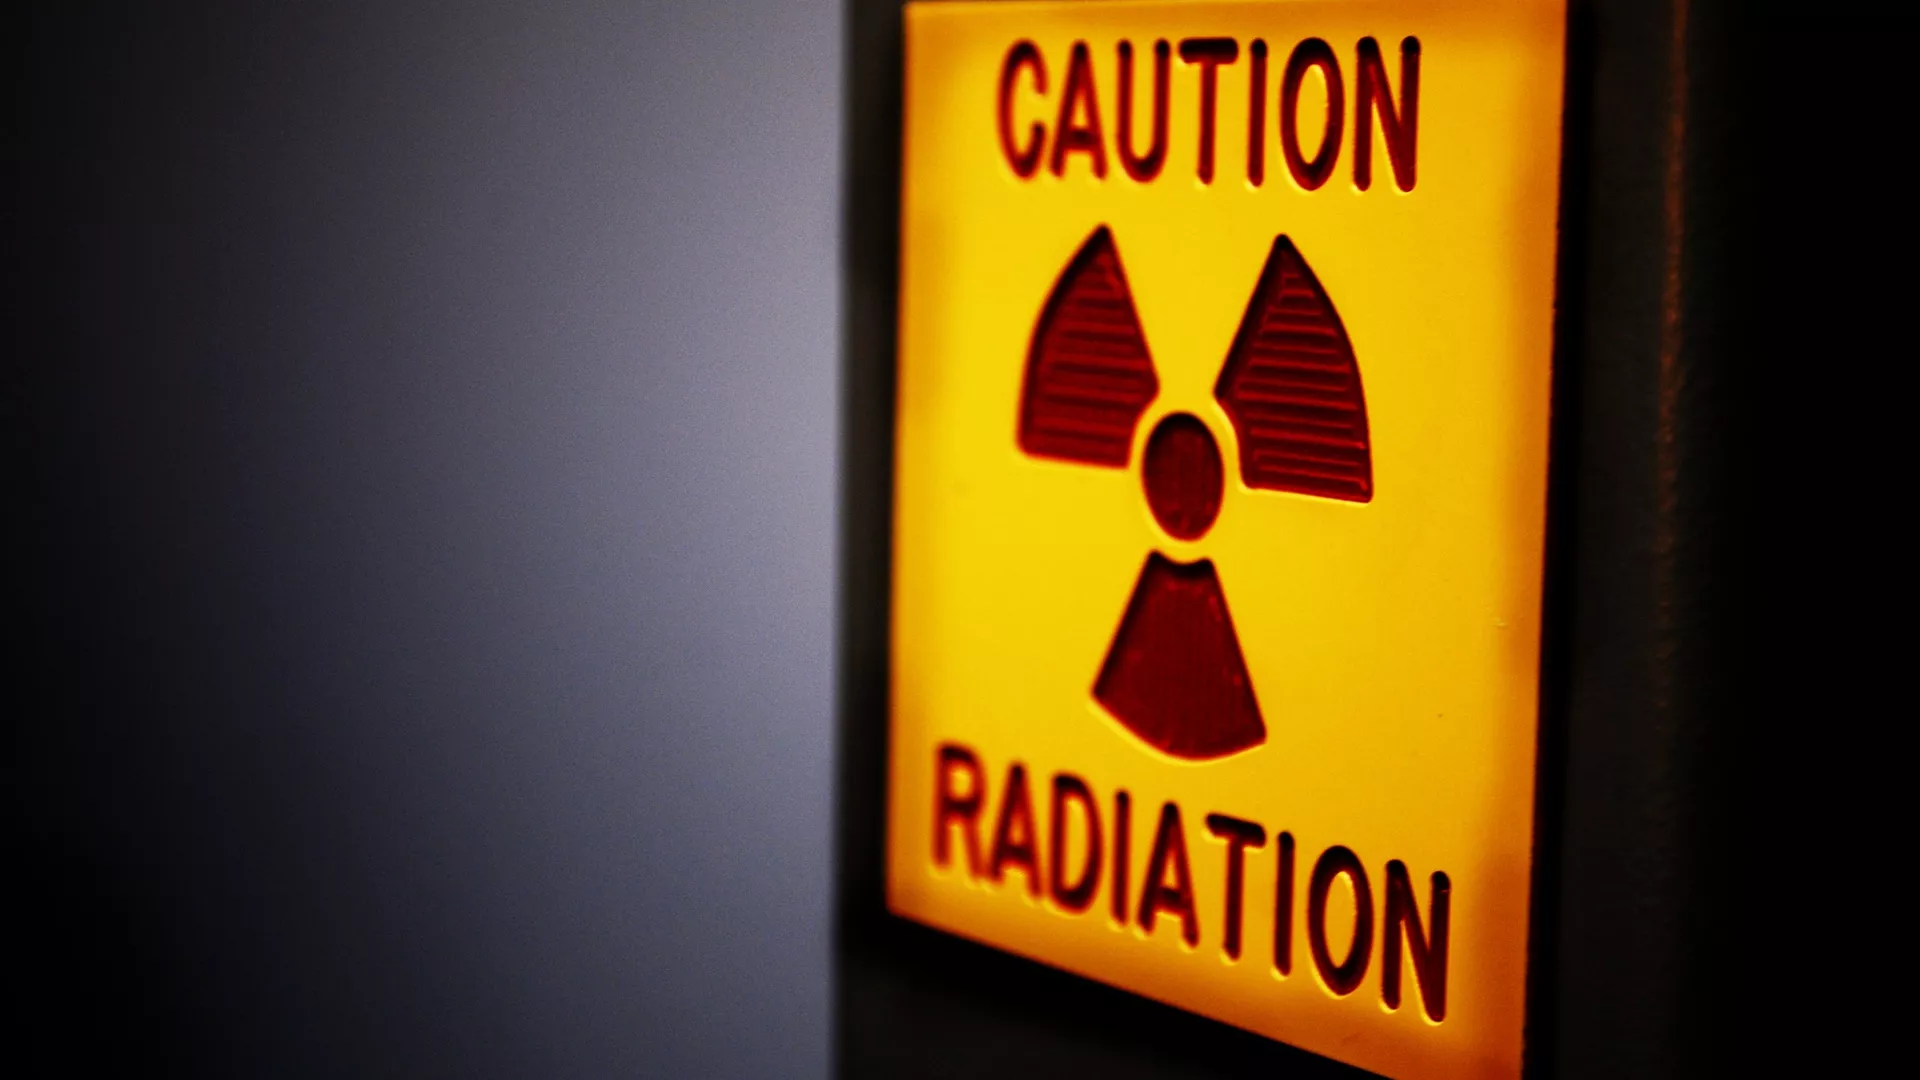  Aclarando los malentendidos comunes sobre la radiación